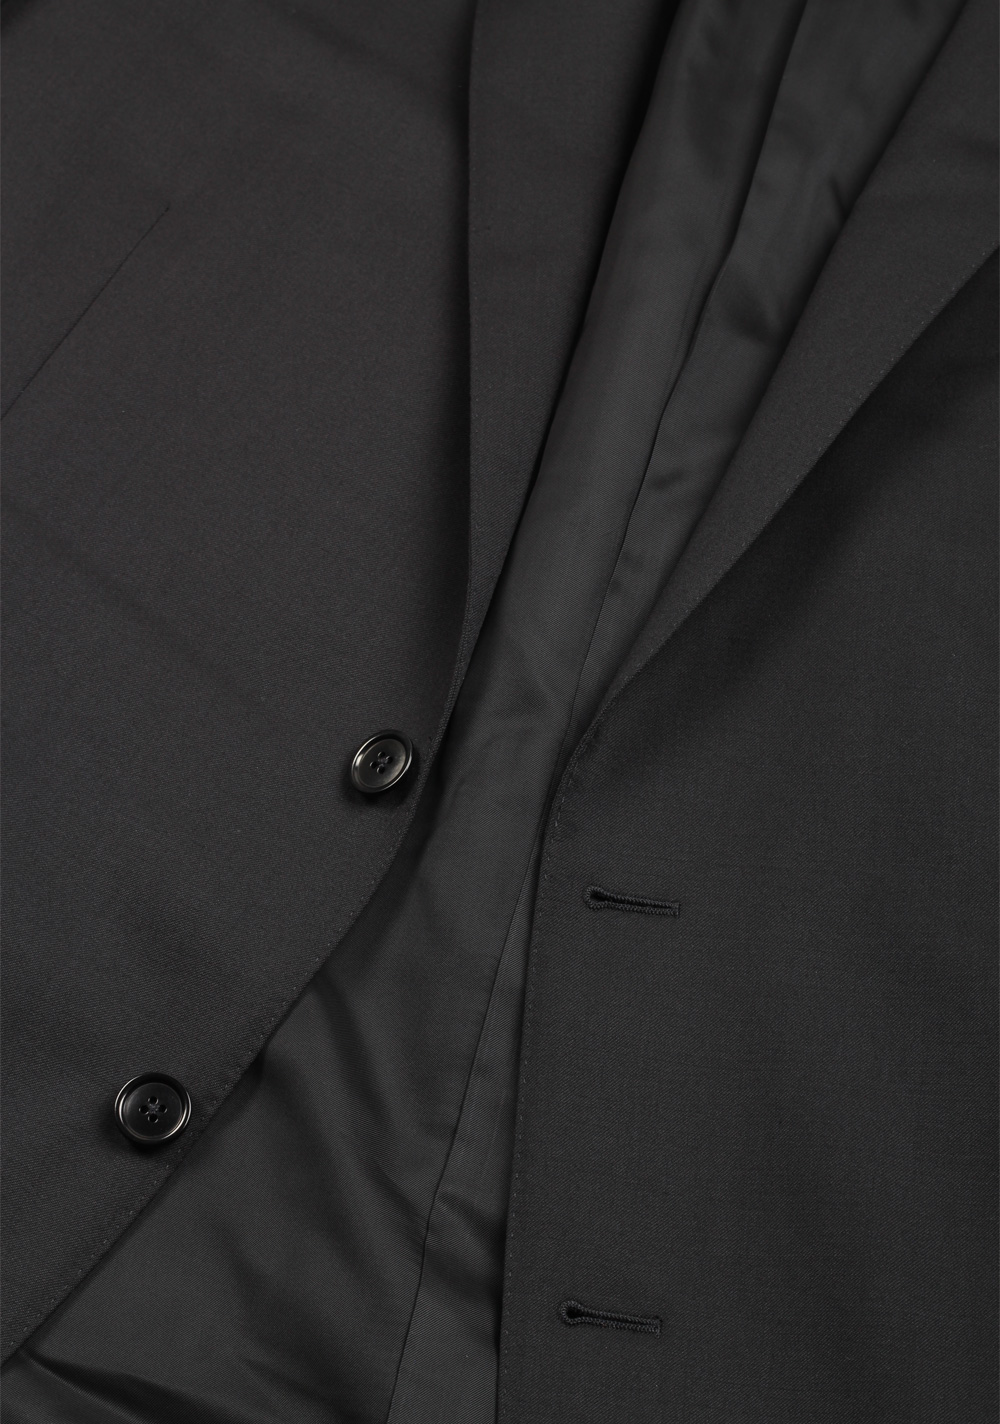 ZEGNA Milano Solid Black Multiseason Suit | Costume Limité